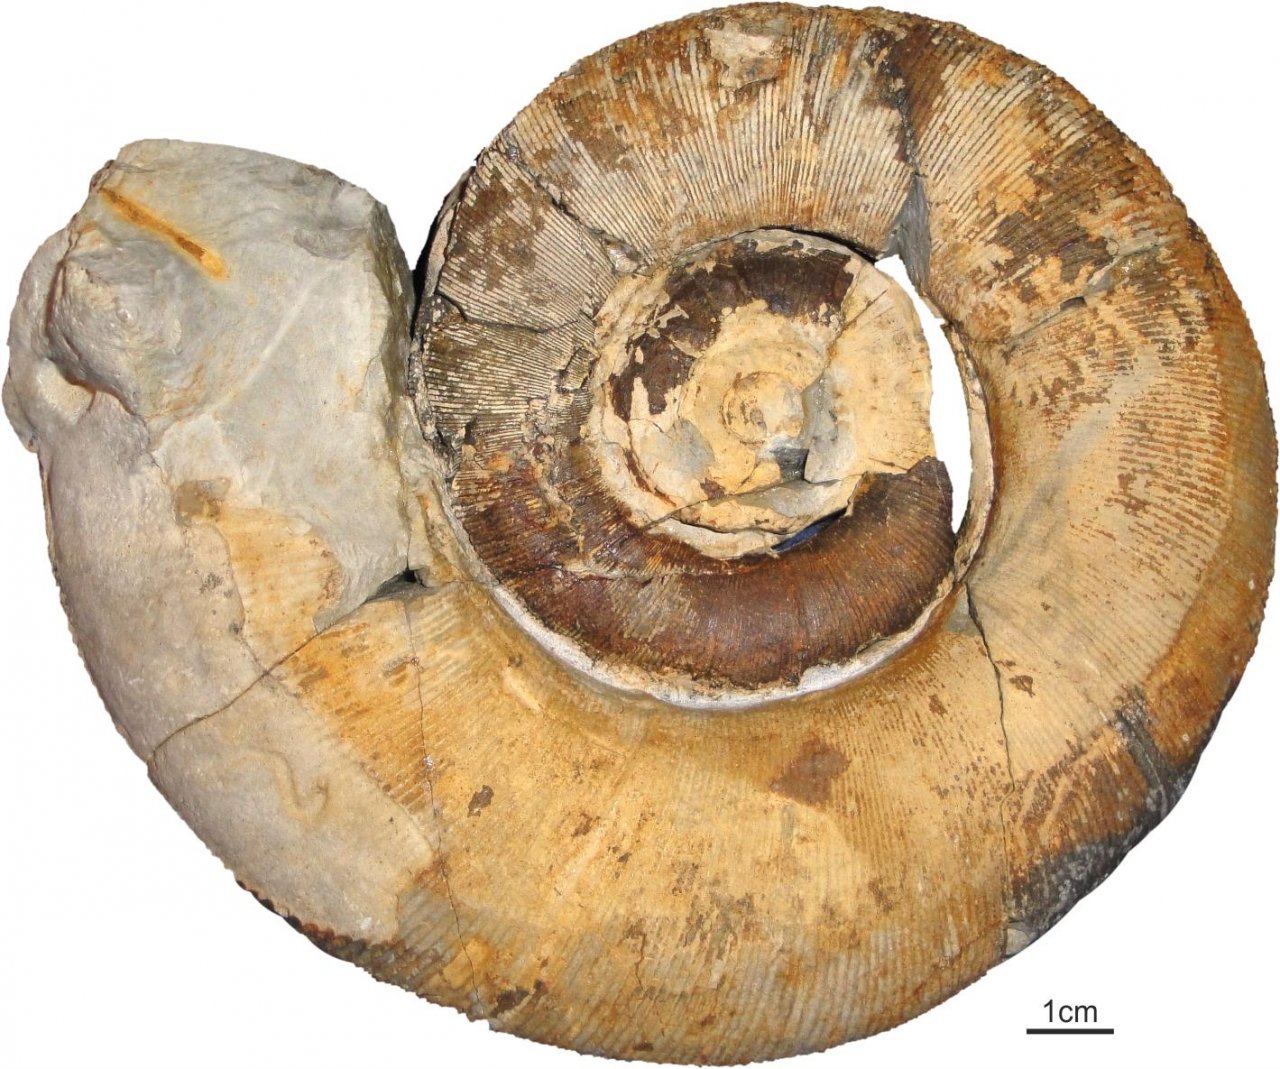 Ammoniten in Fossilfinder App spotted by Alexander Lukeneder on 23.02.2021